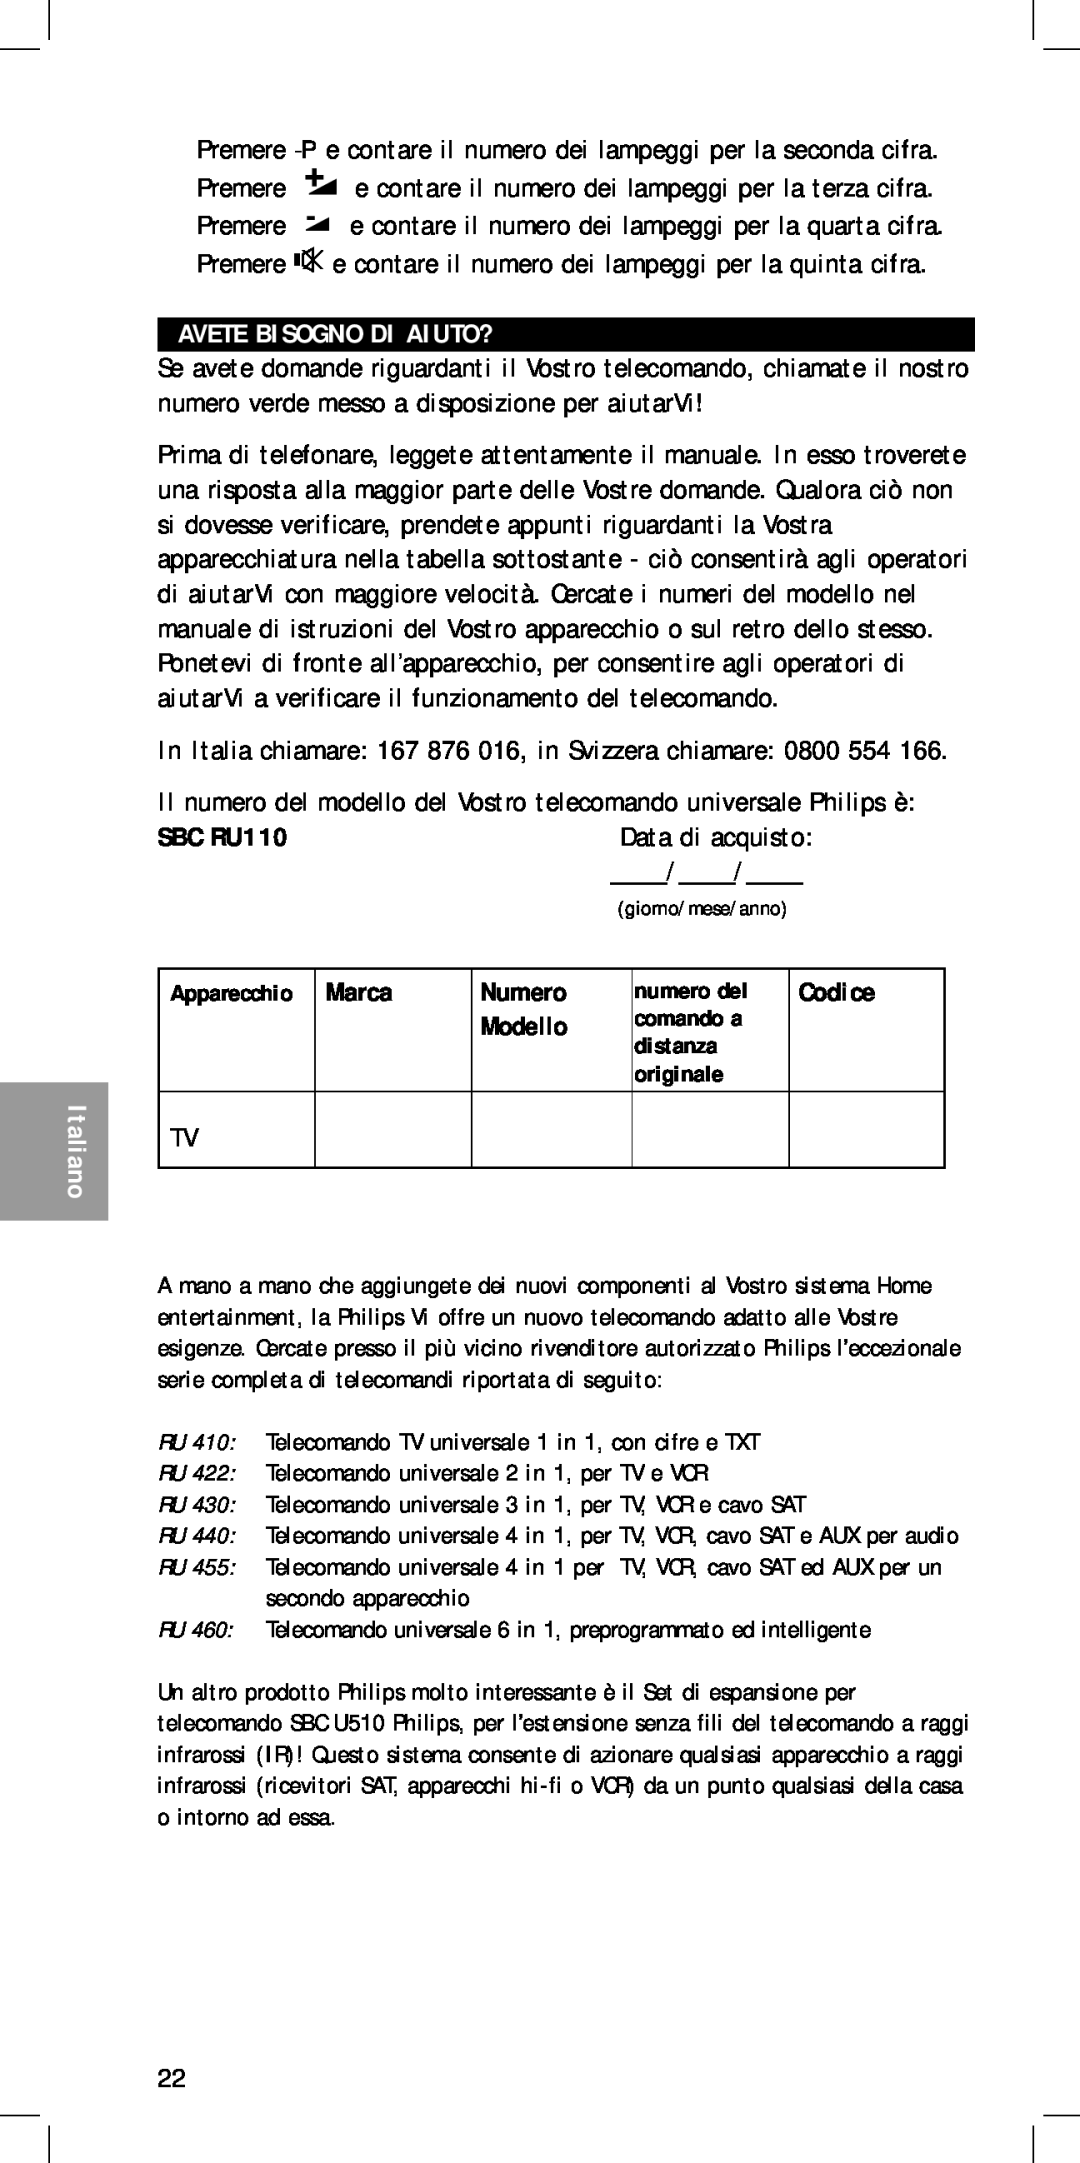 Philips MC-110 Avete Bisogno Di Aiuto?, Data di acquisto, SBC RU110, Marca, Numero, Modello, RU455- page, Apparecchio 